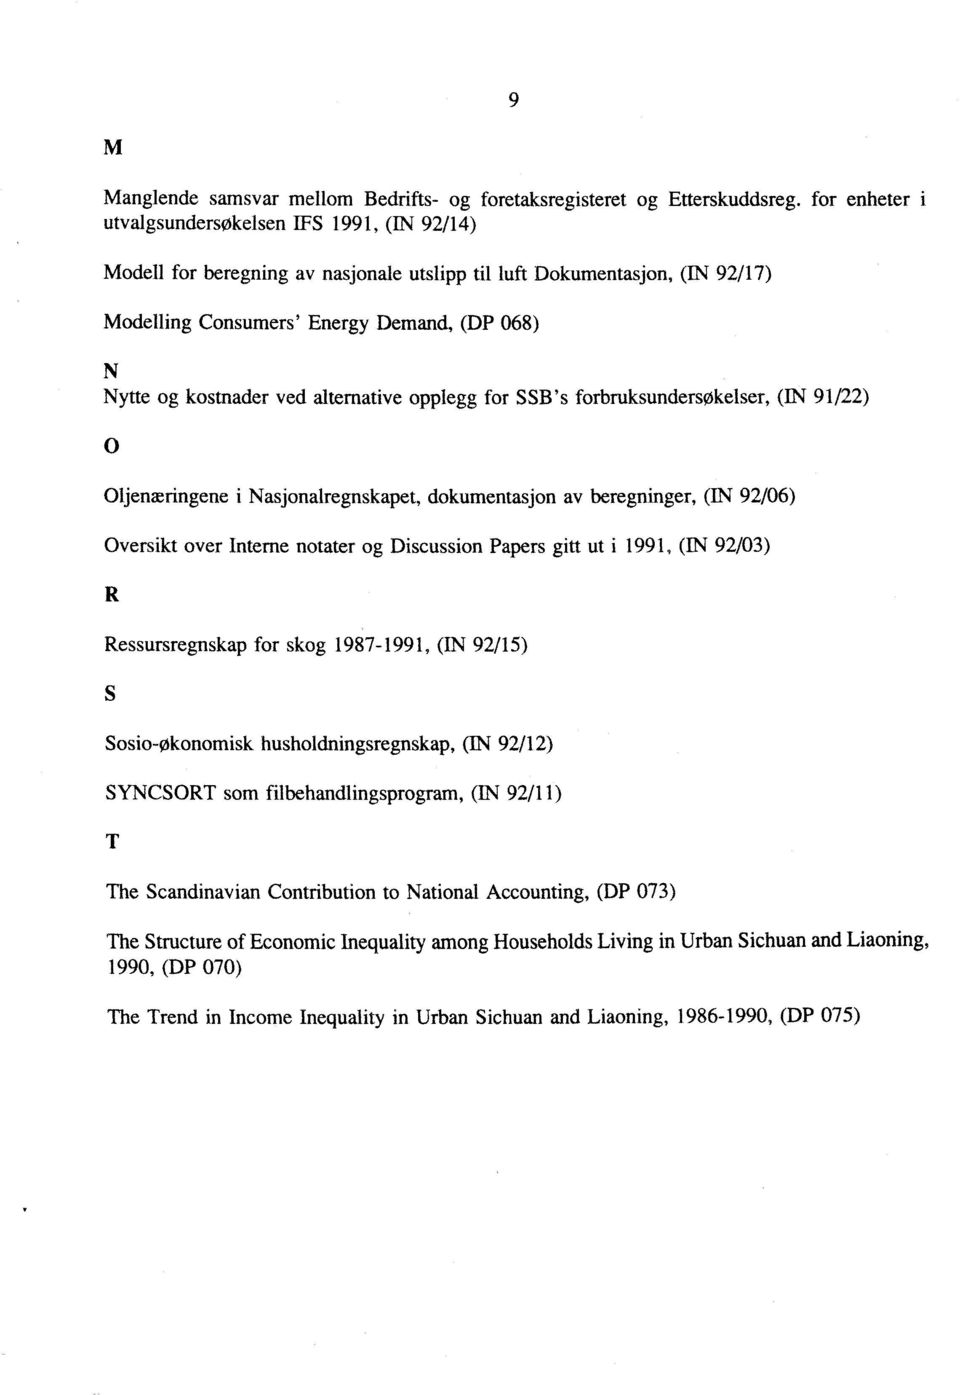 beregninger, ON 92/06) Oversikt over Interne notater og Discussion Papers gitt ut i 1991, (IN 92/03) Ressursregnskap for skog 1987-1991, (IN 92/15) Sosio-Økonomisk husholdningsregnskap, (N 92/12)